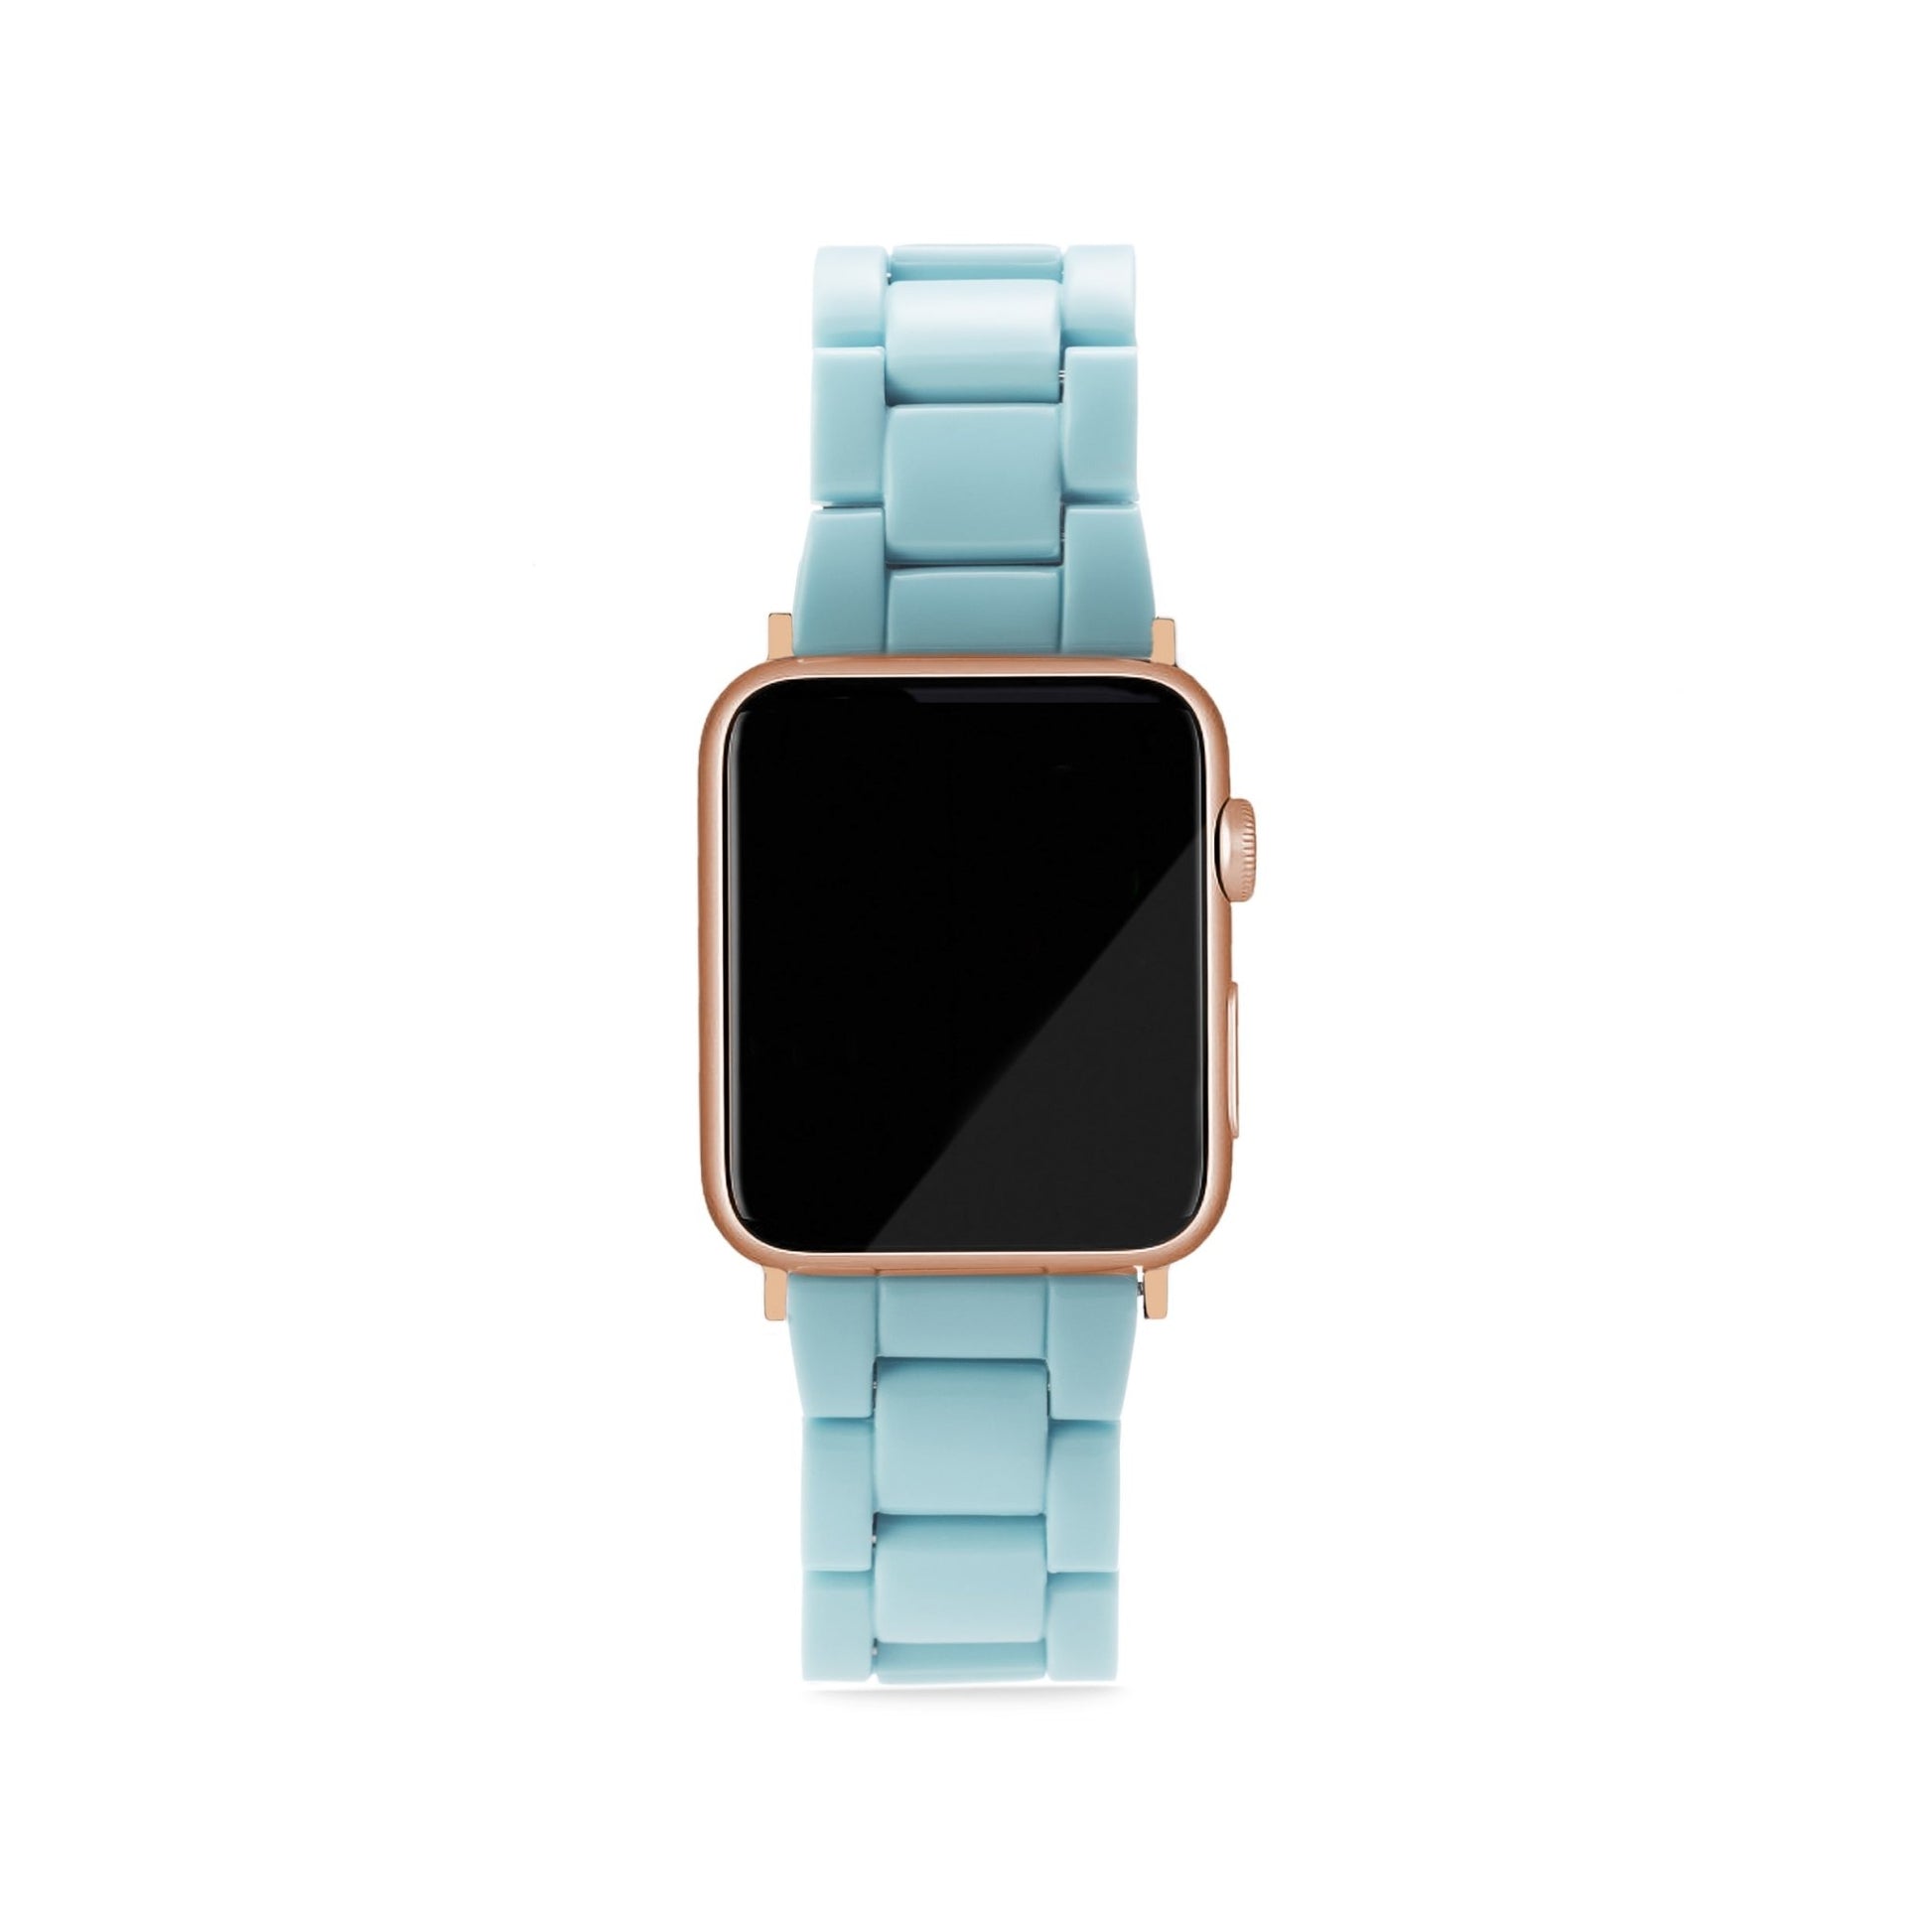 MACHETE Apple Watch Band in Light Blue